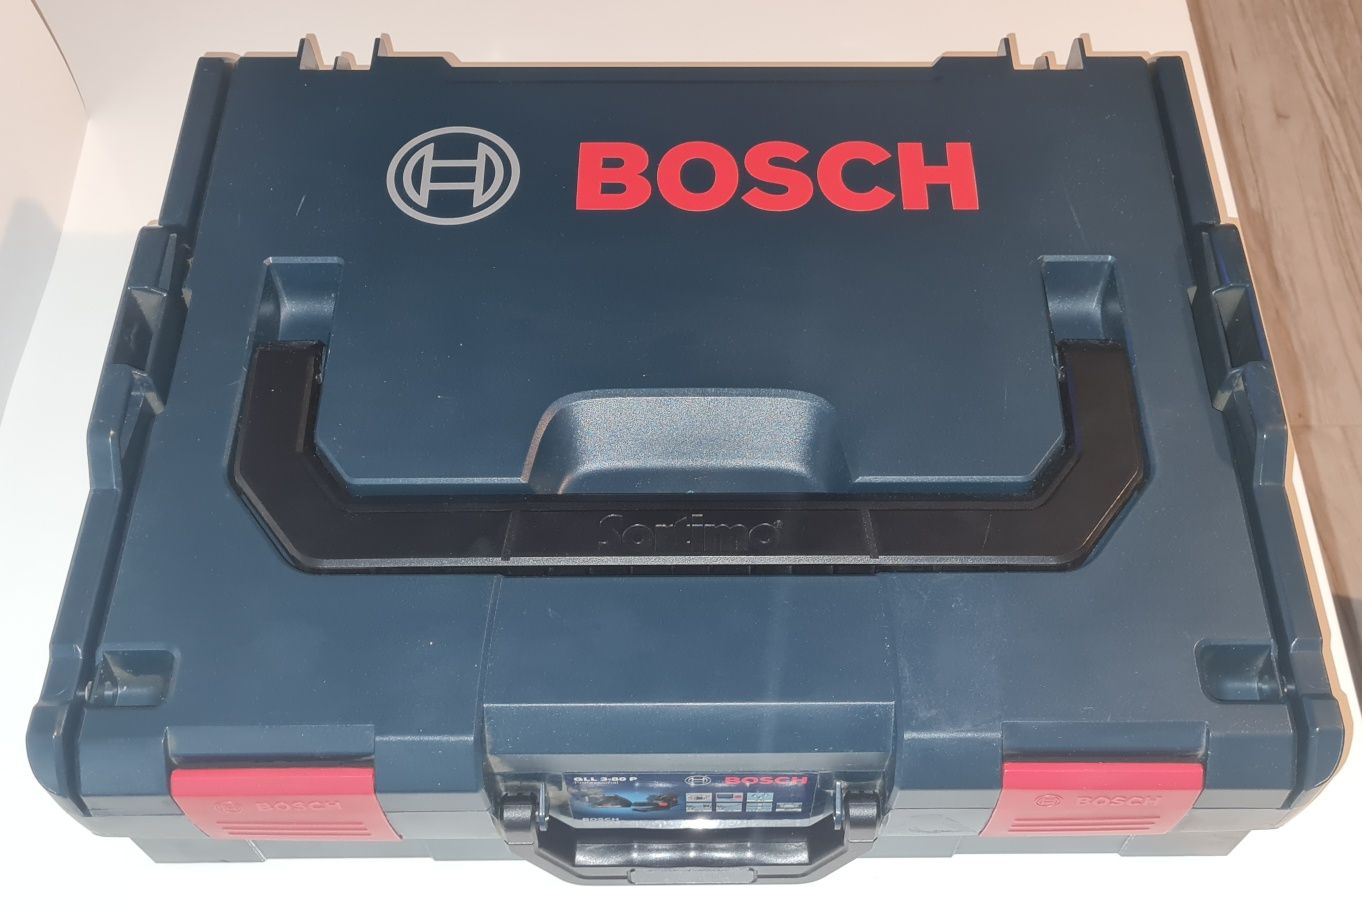 Laser bosch GLL 3-80 p